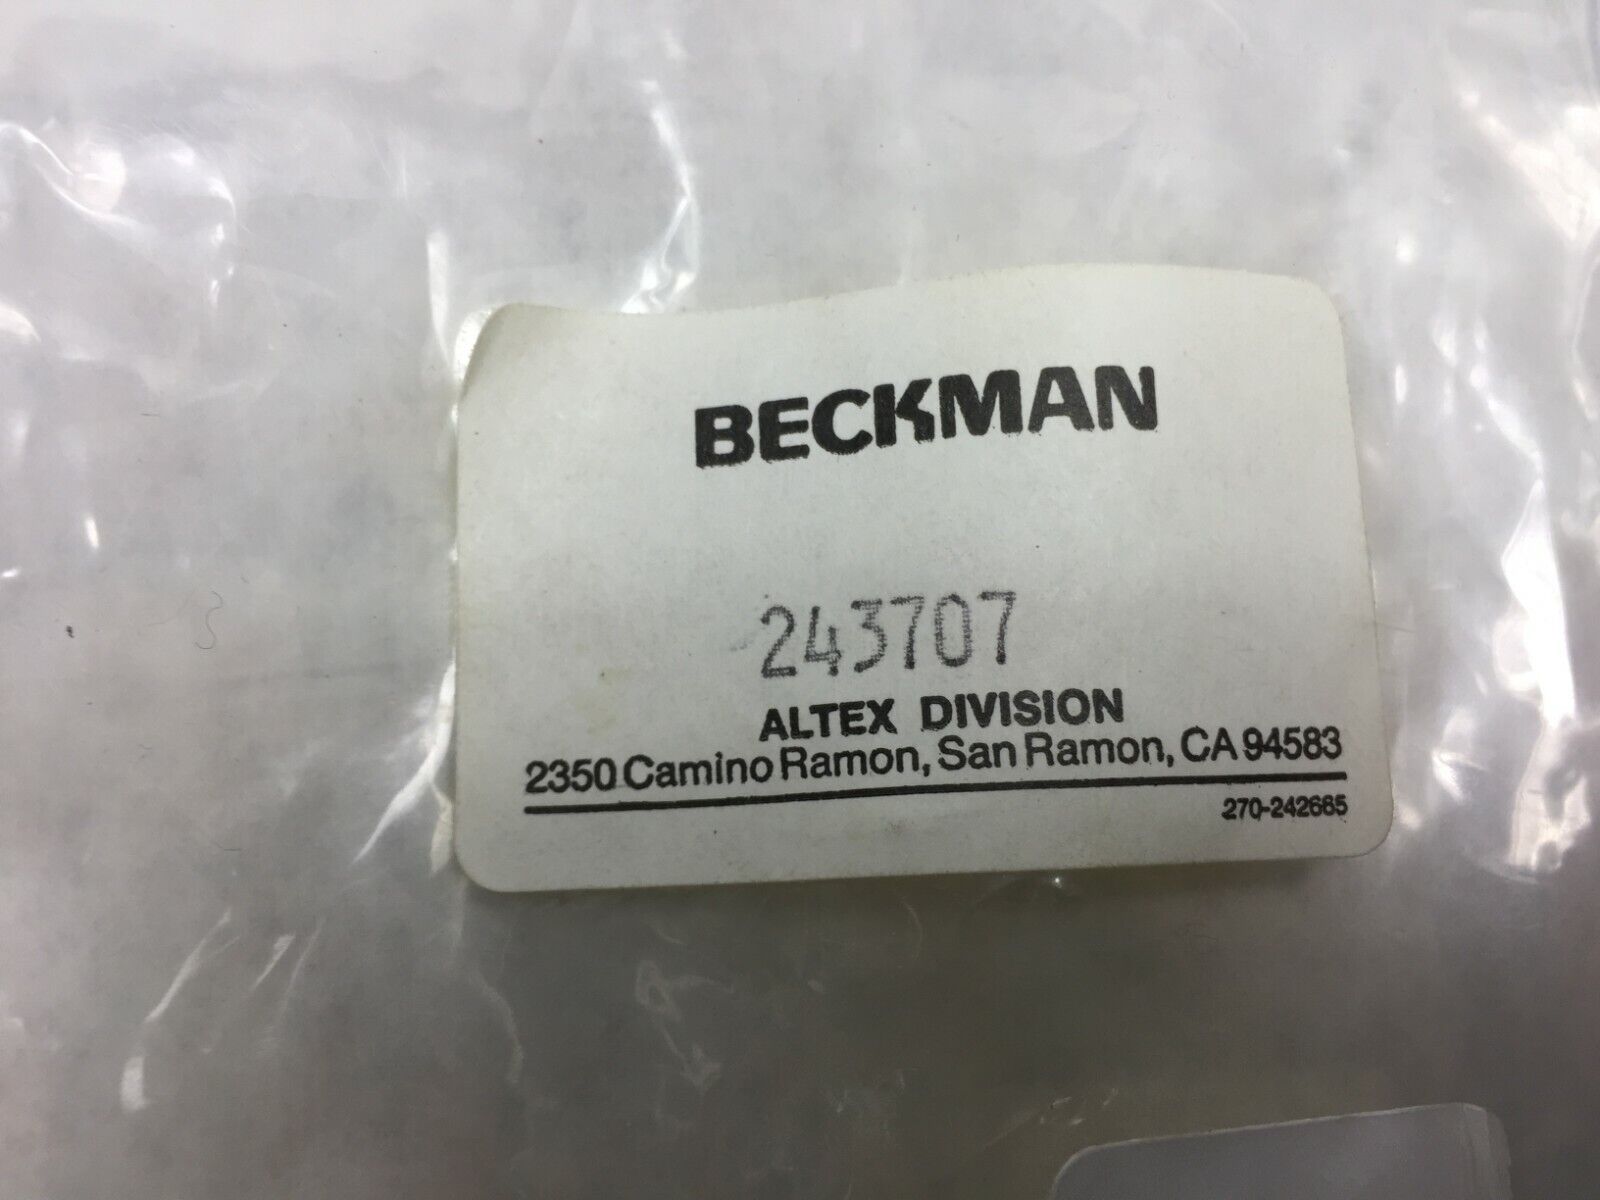 Beckman Cam Foller Shaft for Model 110 Pump  243707